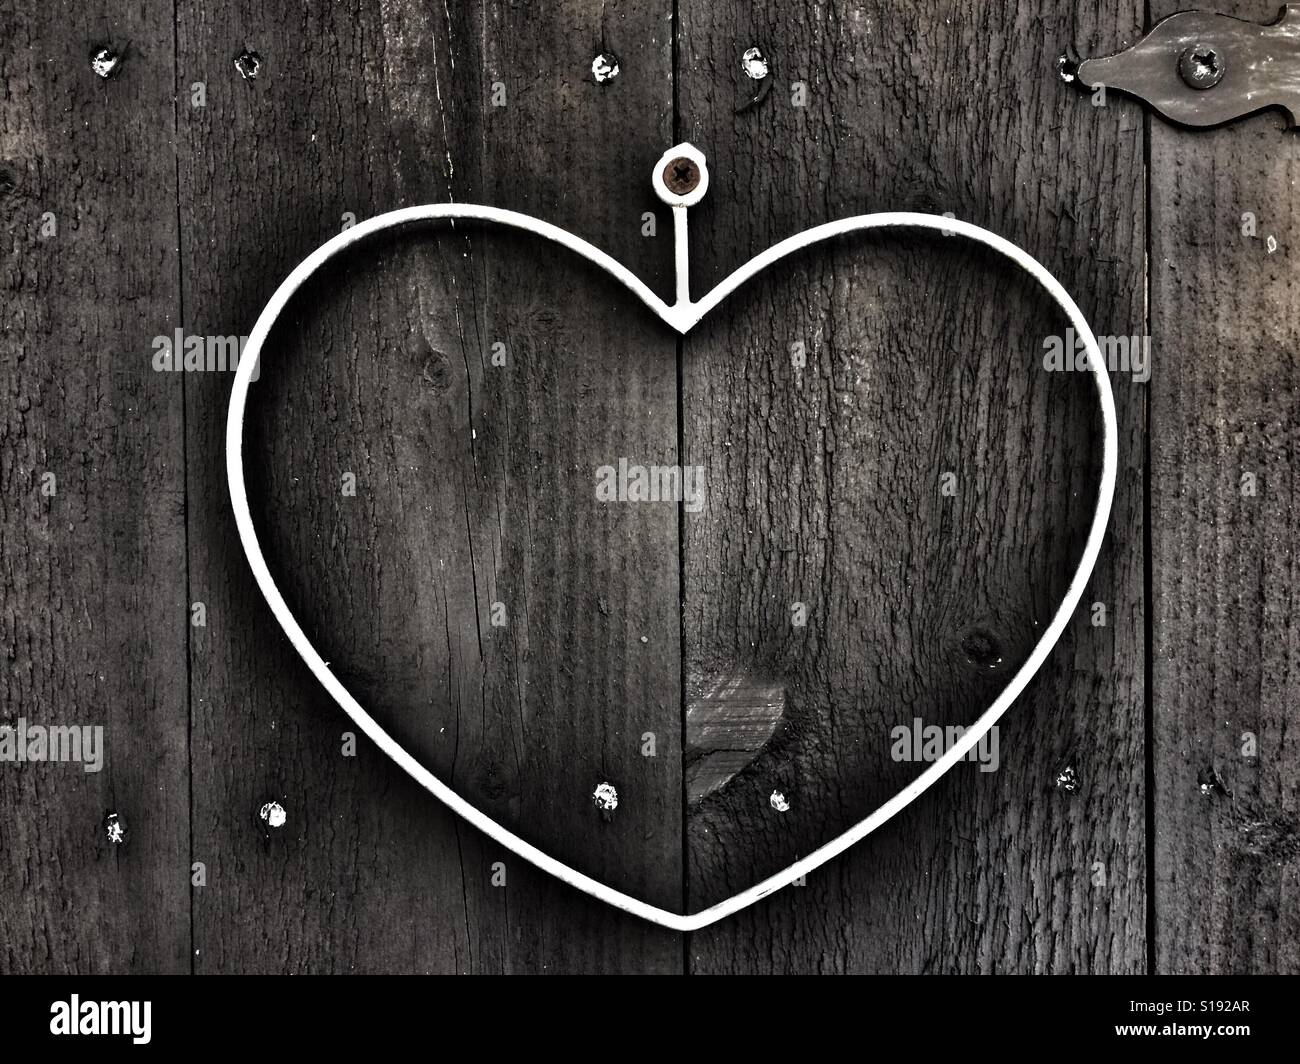 Heart of iron on wooden door Stock Photo